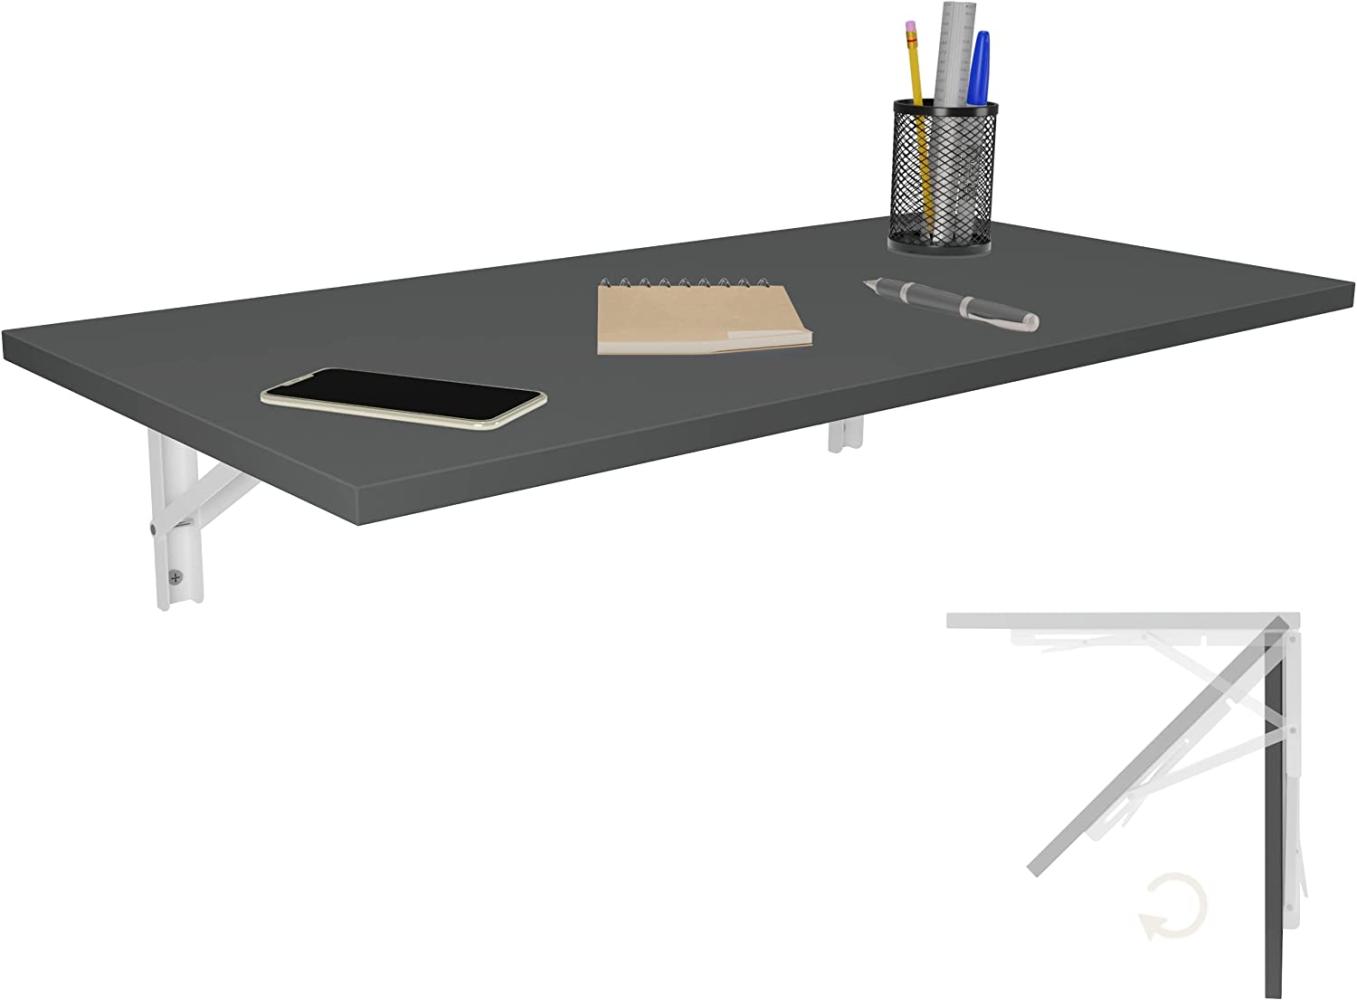 Wandklapptisch Schreibtisch Tischplatte 80x40 cm in Anthrazit Klapptisch Esstisch Küchentisch für die Wand Bartisch Stehtisch Wandtisch Tisch klappbar zur Wandmontage im Büro Küche Bild 1